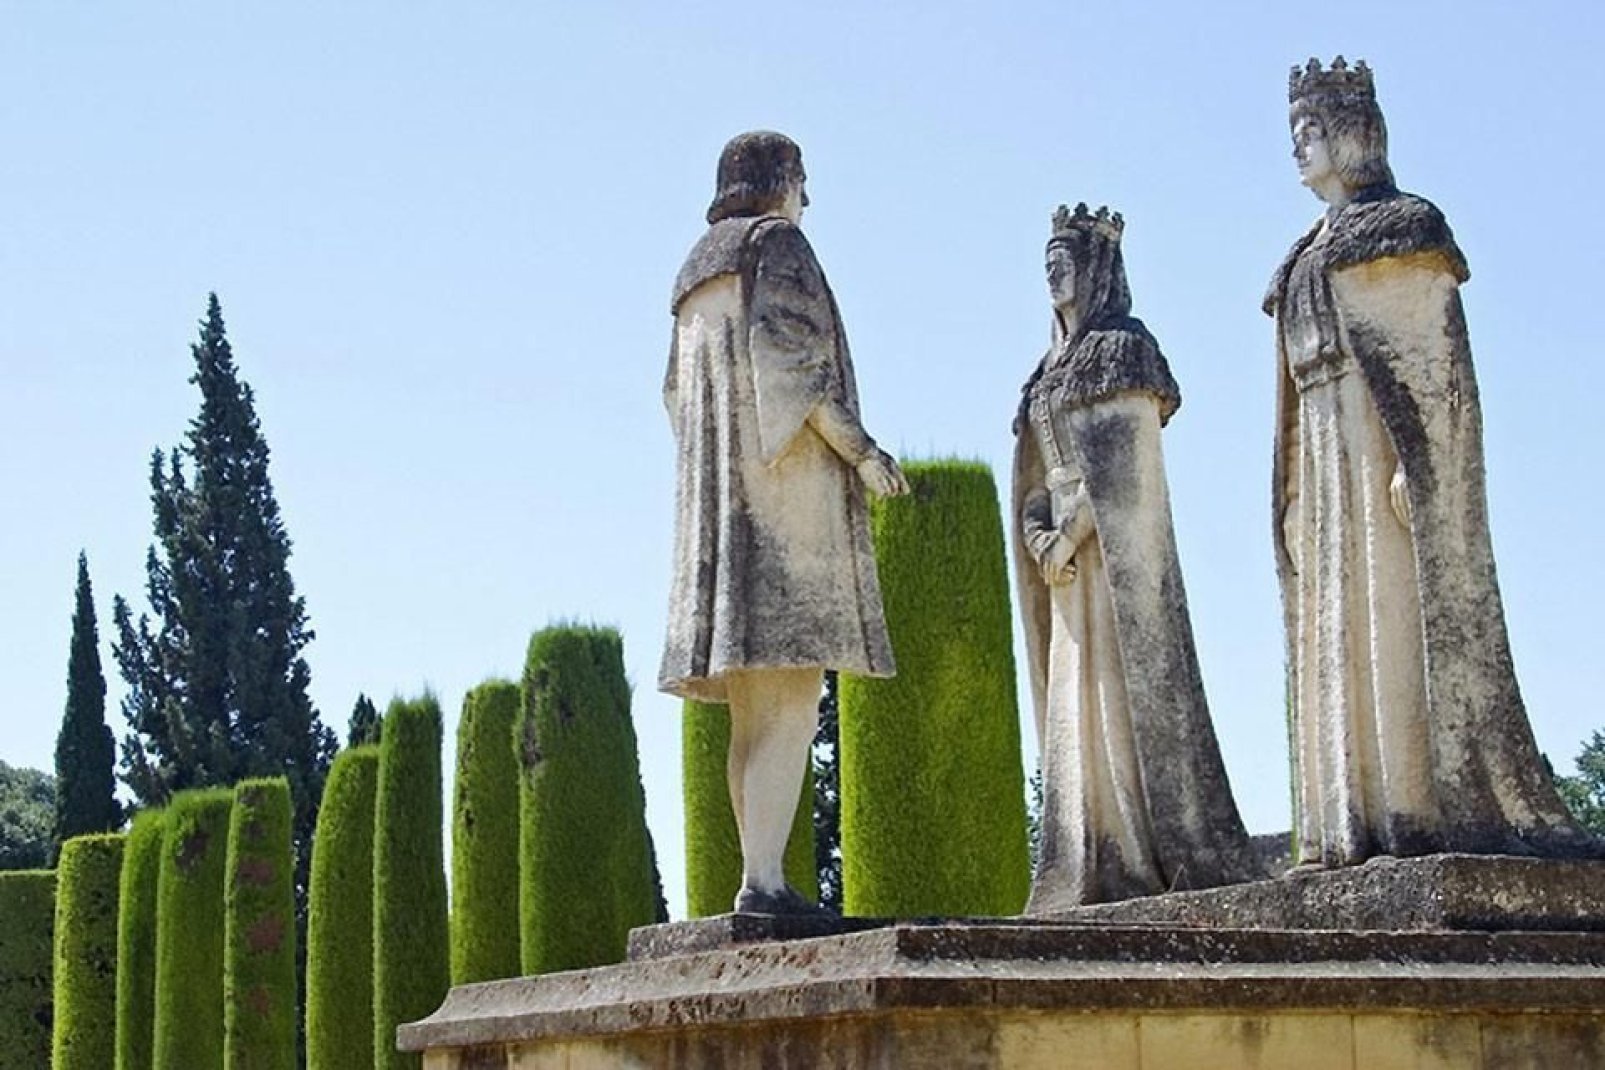 Die Statuen der Katholischen Könige und Christoph Kolumbus in den Gärten des Alcazar von Córdoba.